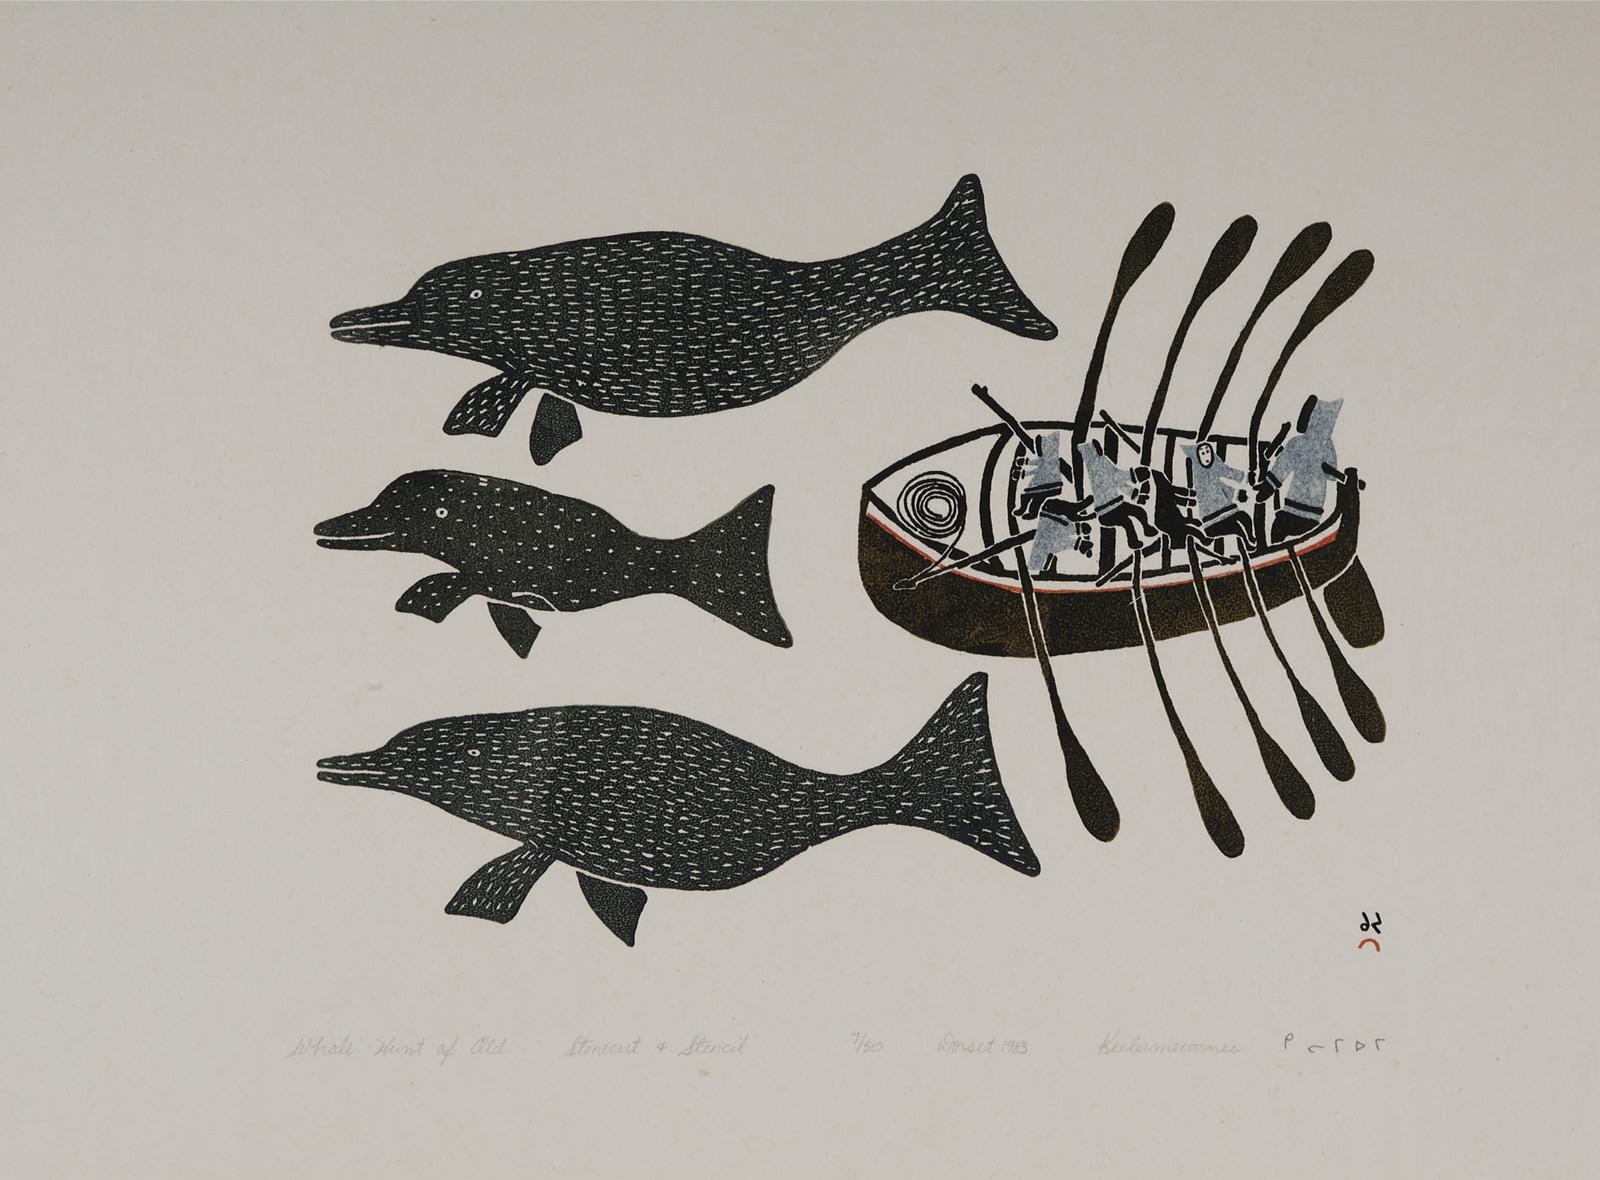 Keeleemeeoomee Samualie (1919-1983) - Whale Hunt Of Old